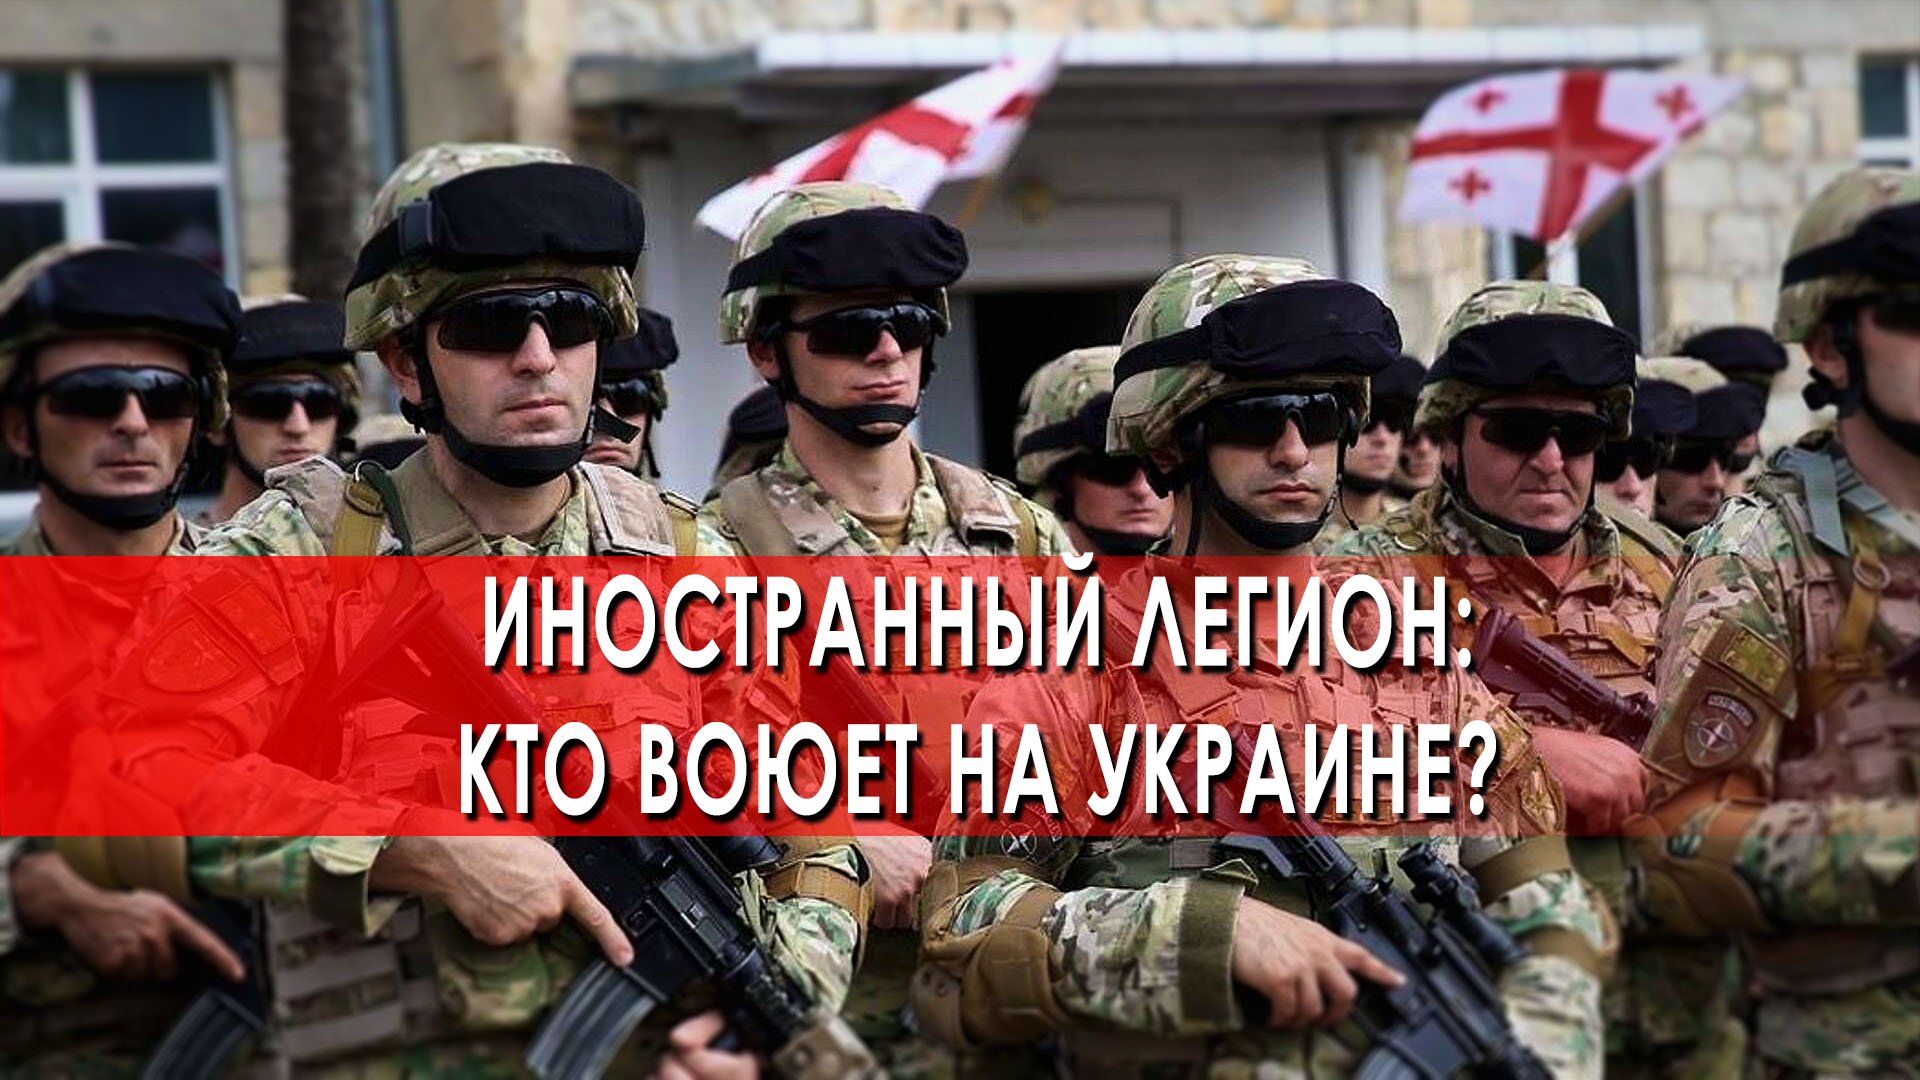 Иностранный легион: кто воюет на Украине? - Документальный спецпроект (16.04.2022)